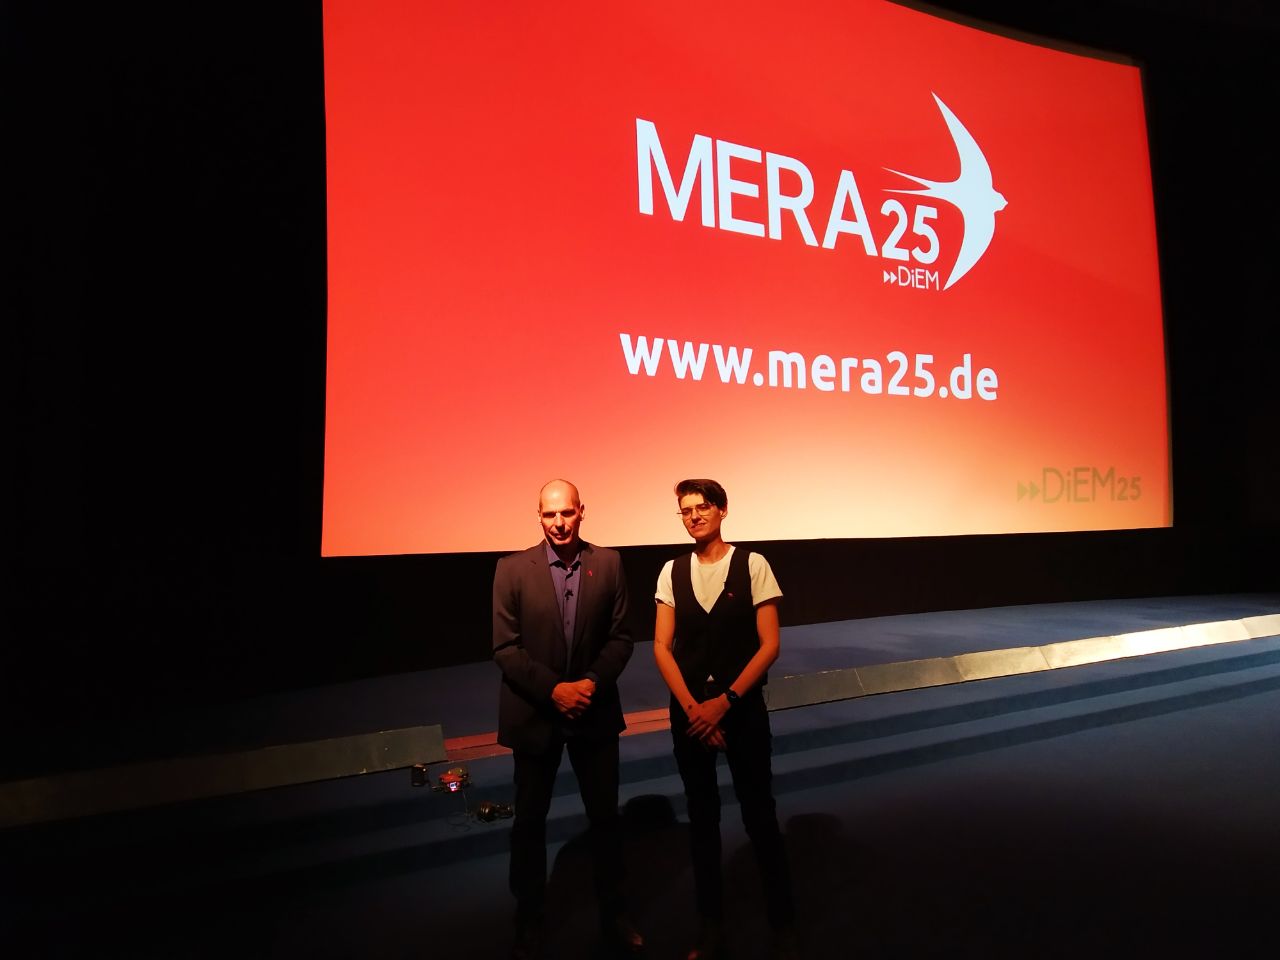 DiEM25 gründet Bundespartei MERA25 in Berlin